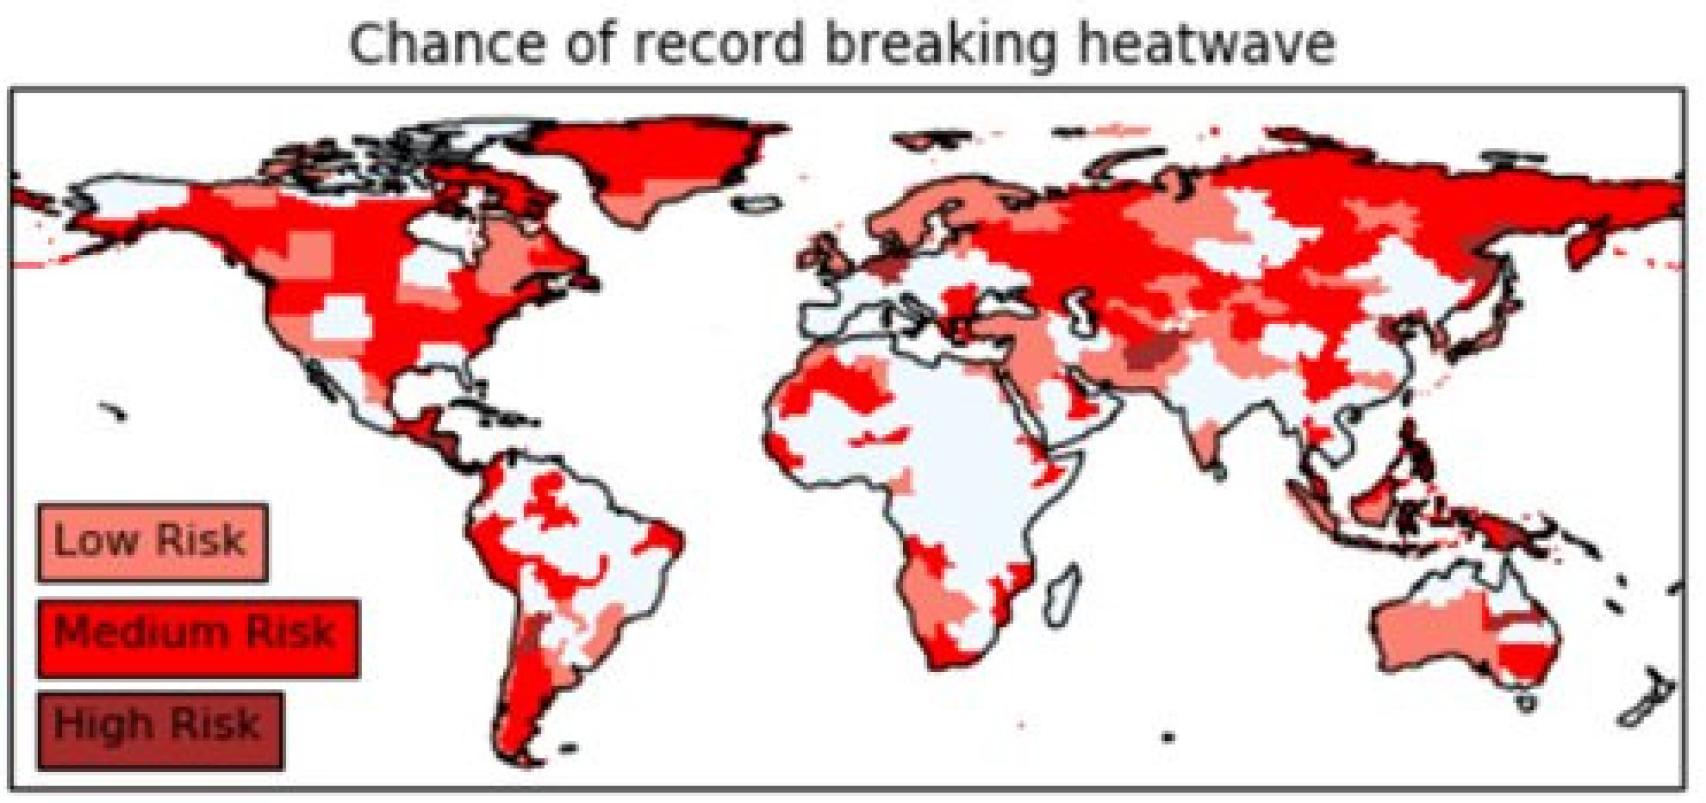 Mapa que muestra dónde es más probable que se produzcan olas de calor sin precedentes. Las regiones de alto riesgo tienen un periodo de retorno inferior a 100 años. Las regiones de bajo riesgo ya han sufrido olas de calor que parecían inverosímiles antes de producirse.